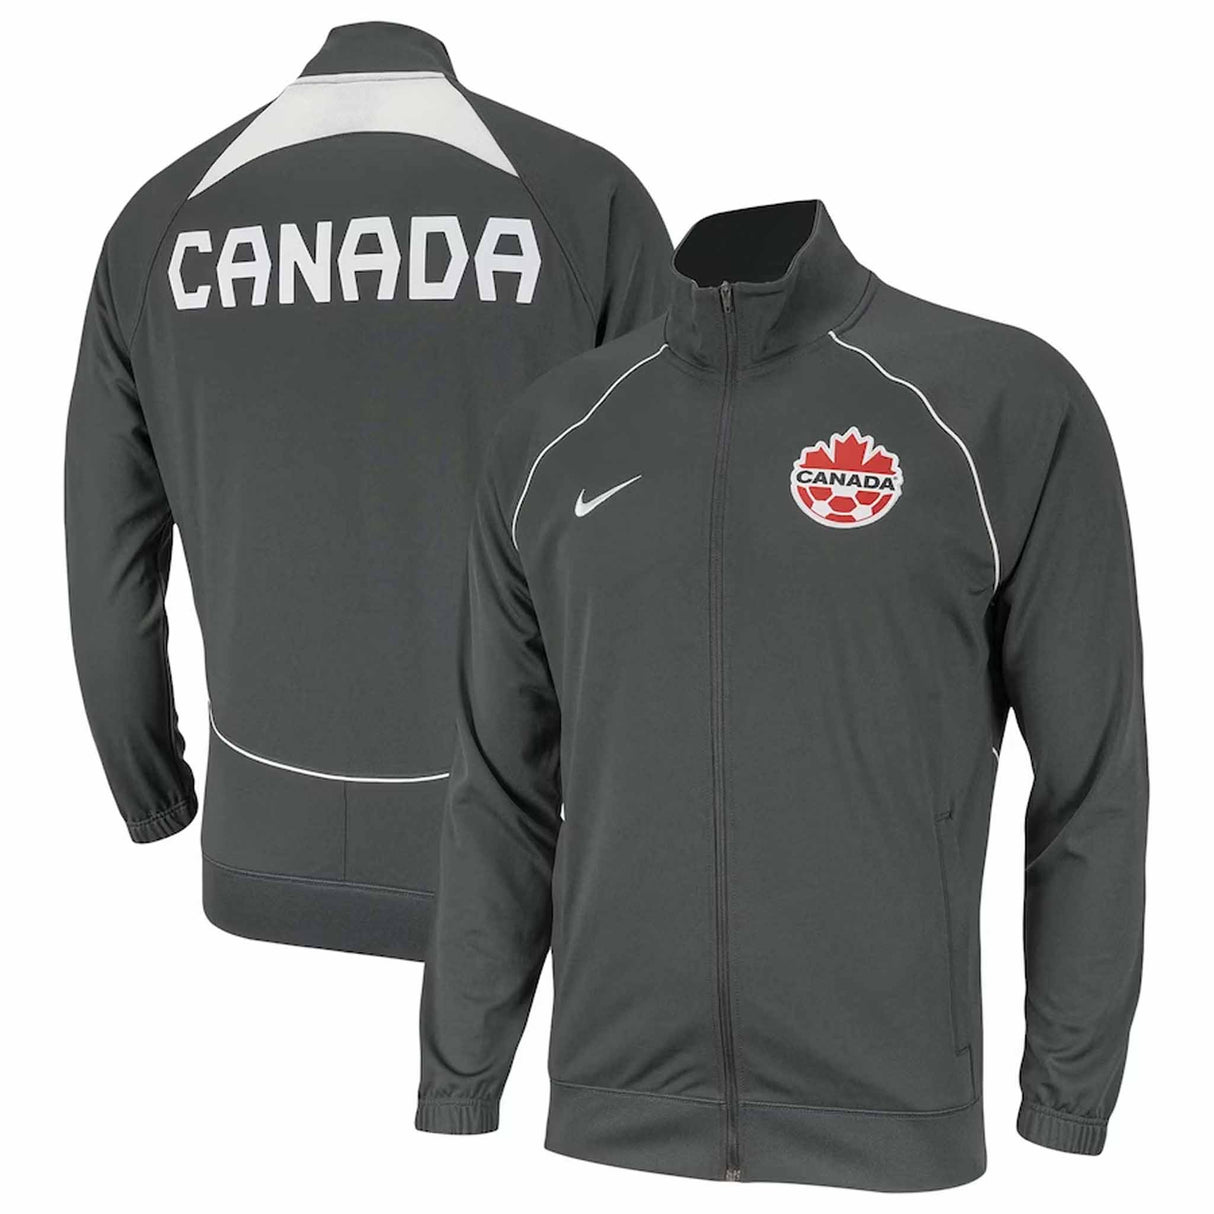 Nike Canada Soccer veste de l'équipe nationale pour homme - Gris